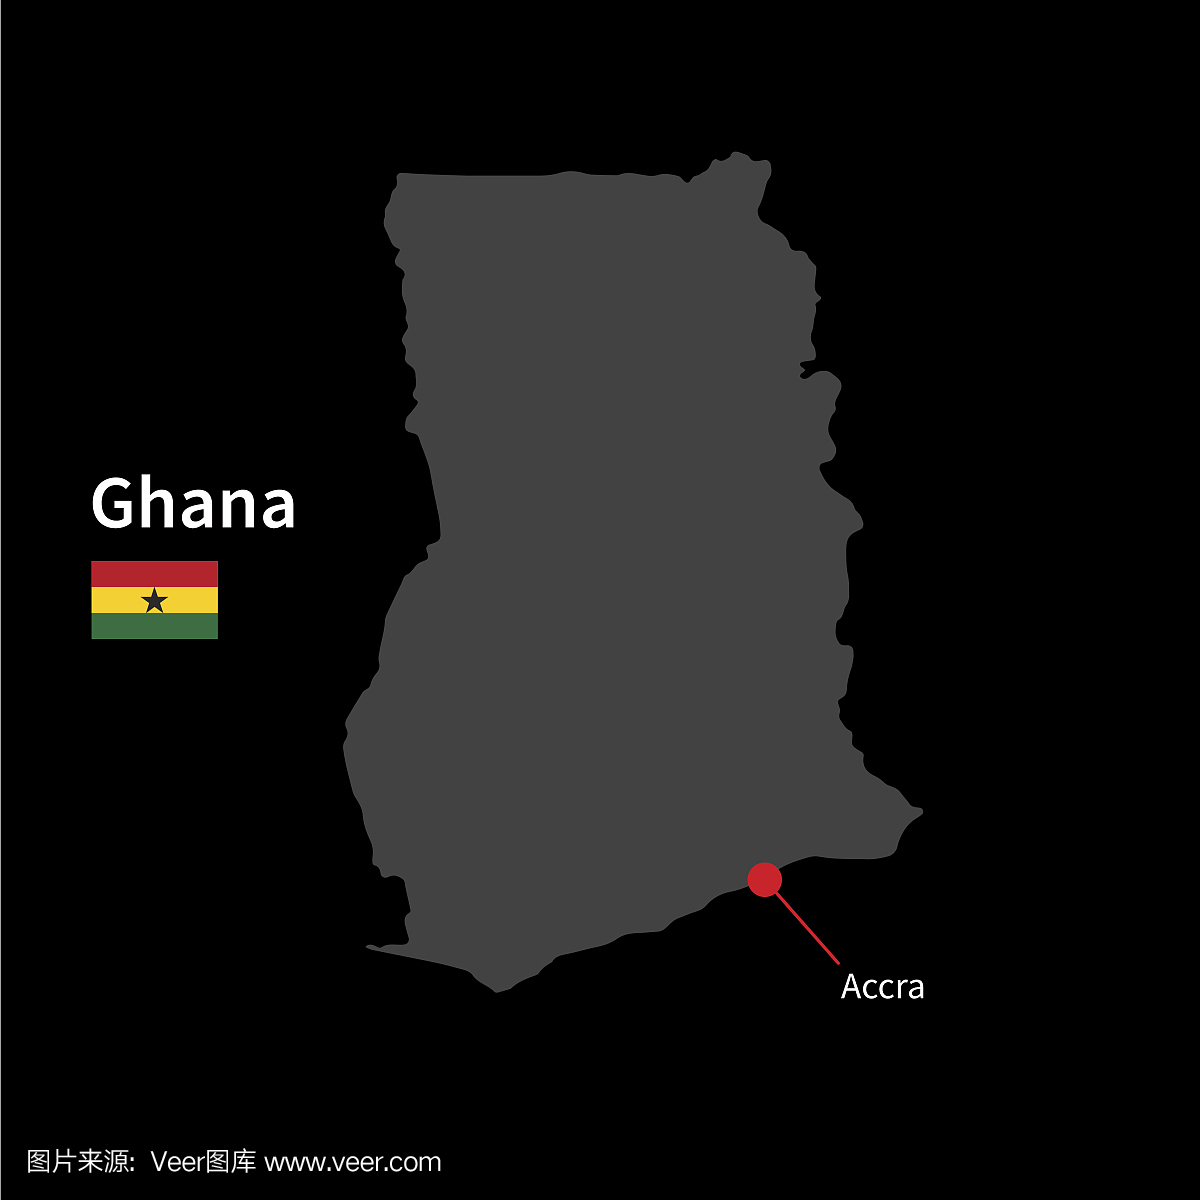 加纳和首都阿克拉国旗的详细地图